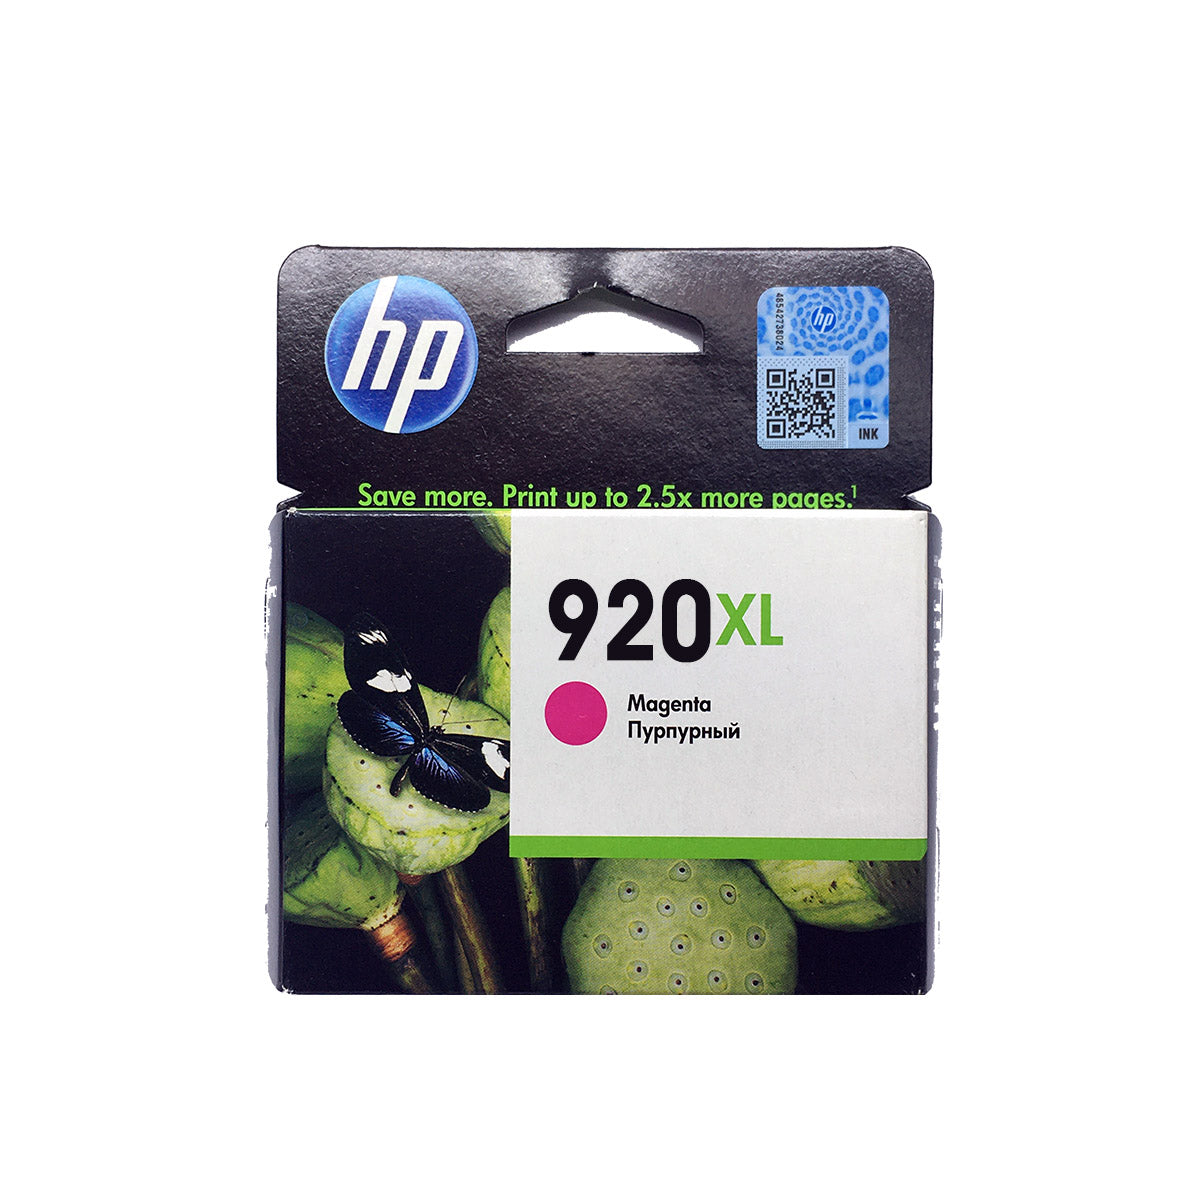 Shop HP 920XL Original Ink Cartridge Magenta Color online in Abu Dhabi, UAE